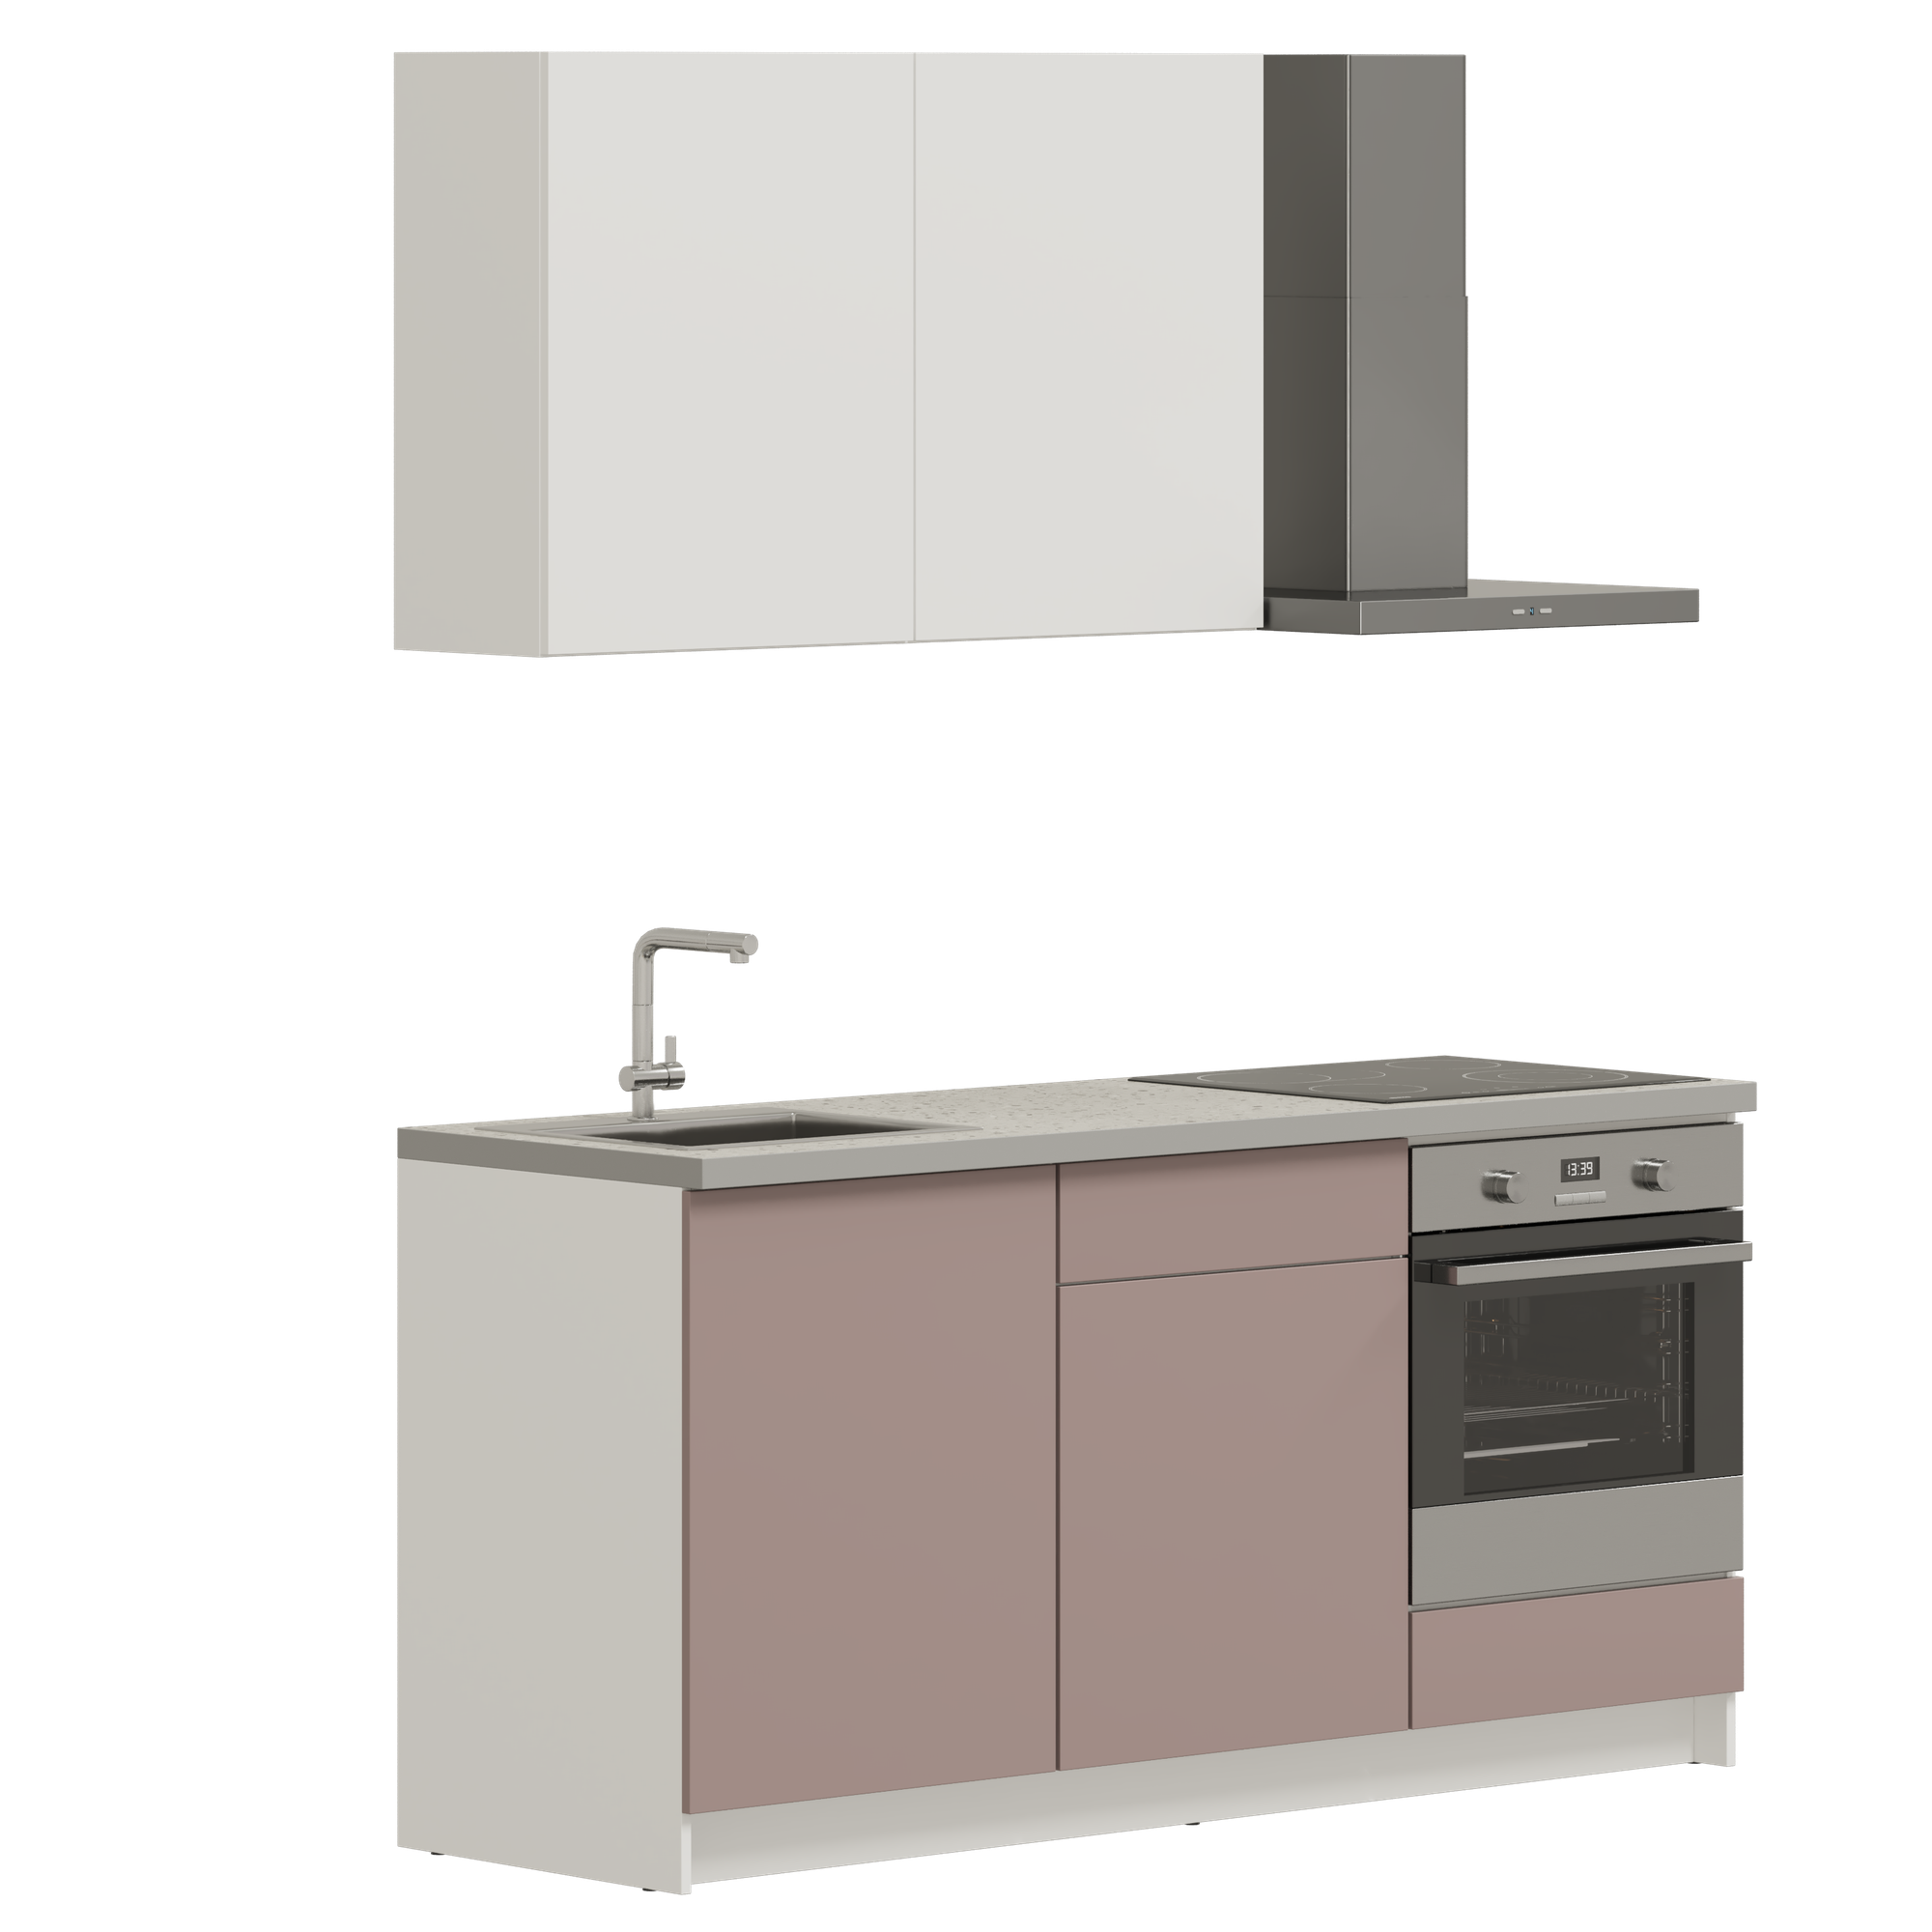 Кухонный гарнитур, кухня прямая Pragma Elinda 181 см (1,81 м), под встраиваемую духовку, со столешницей, ЛДСП, пыльный розовый/белый